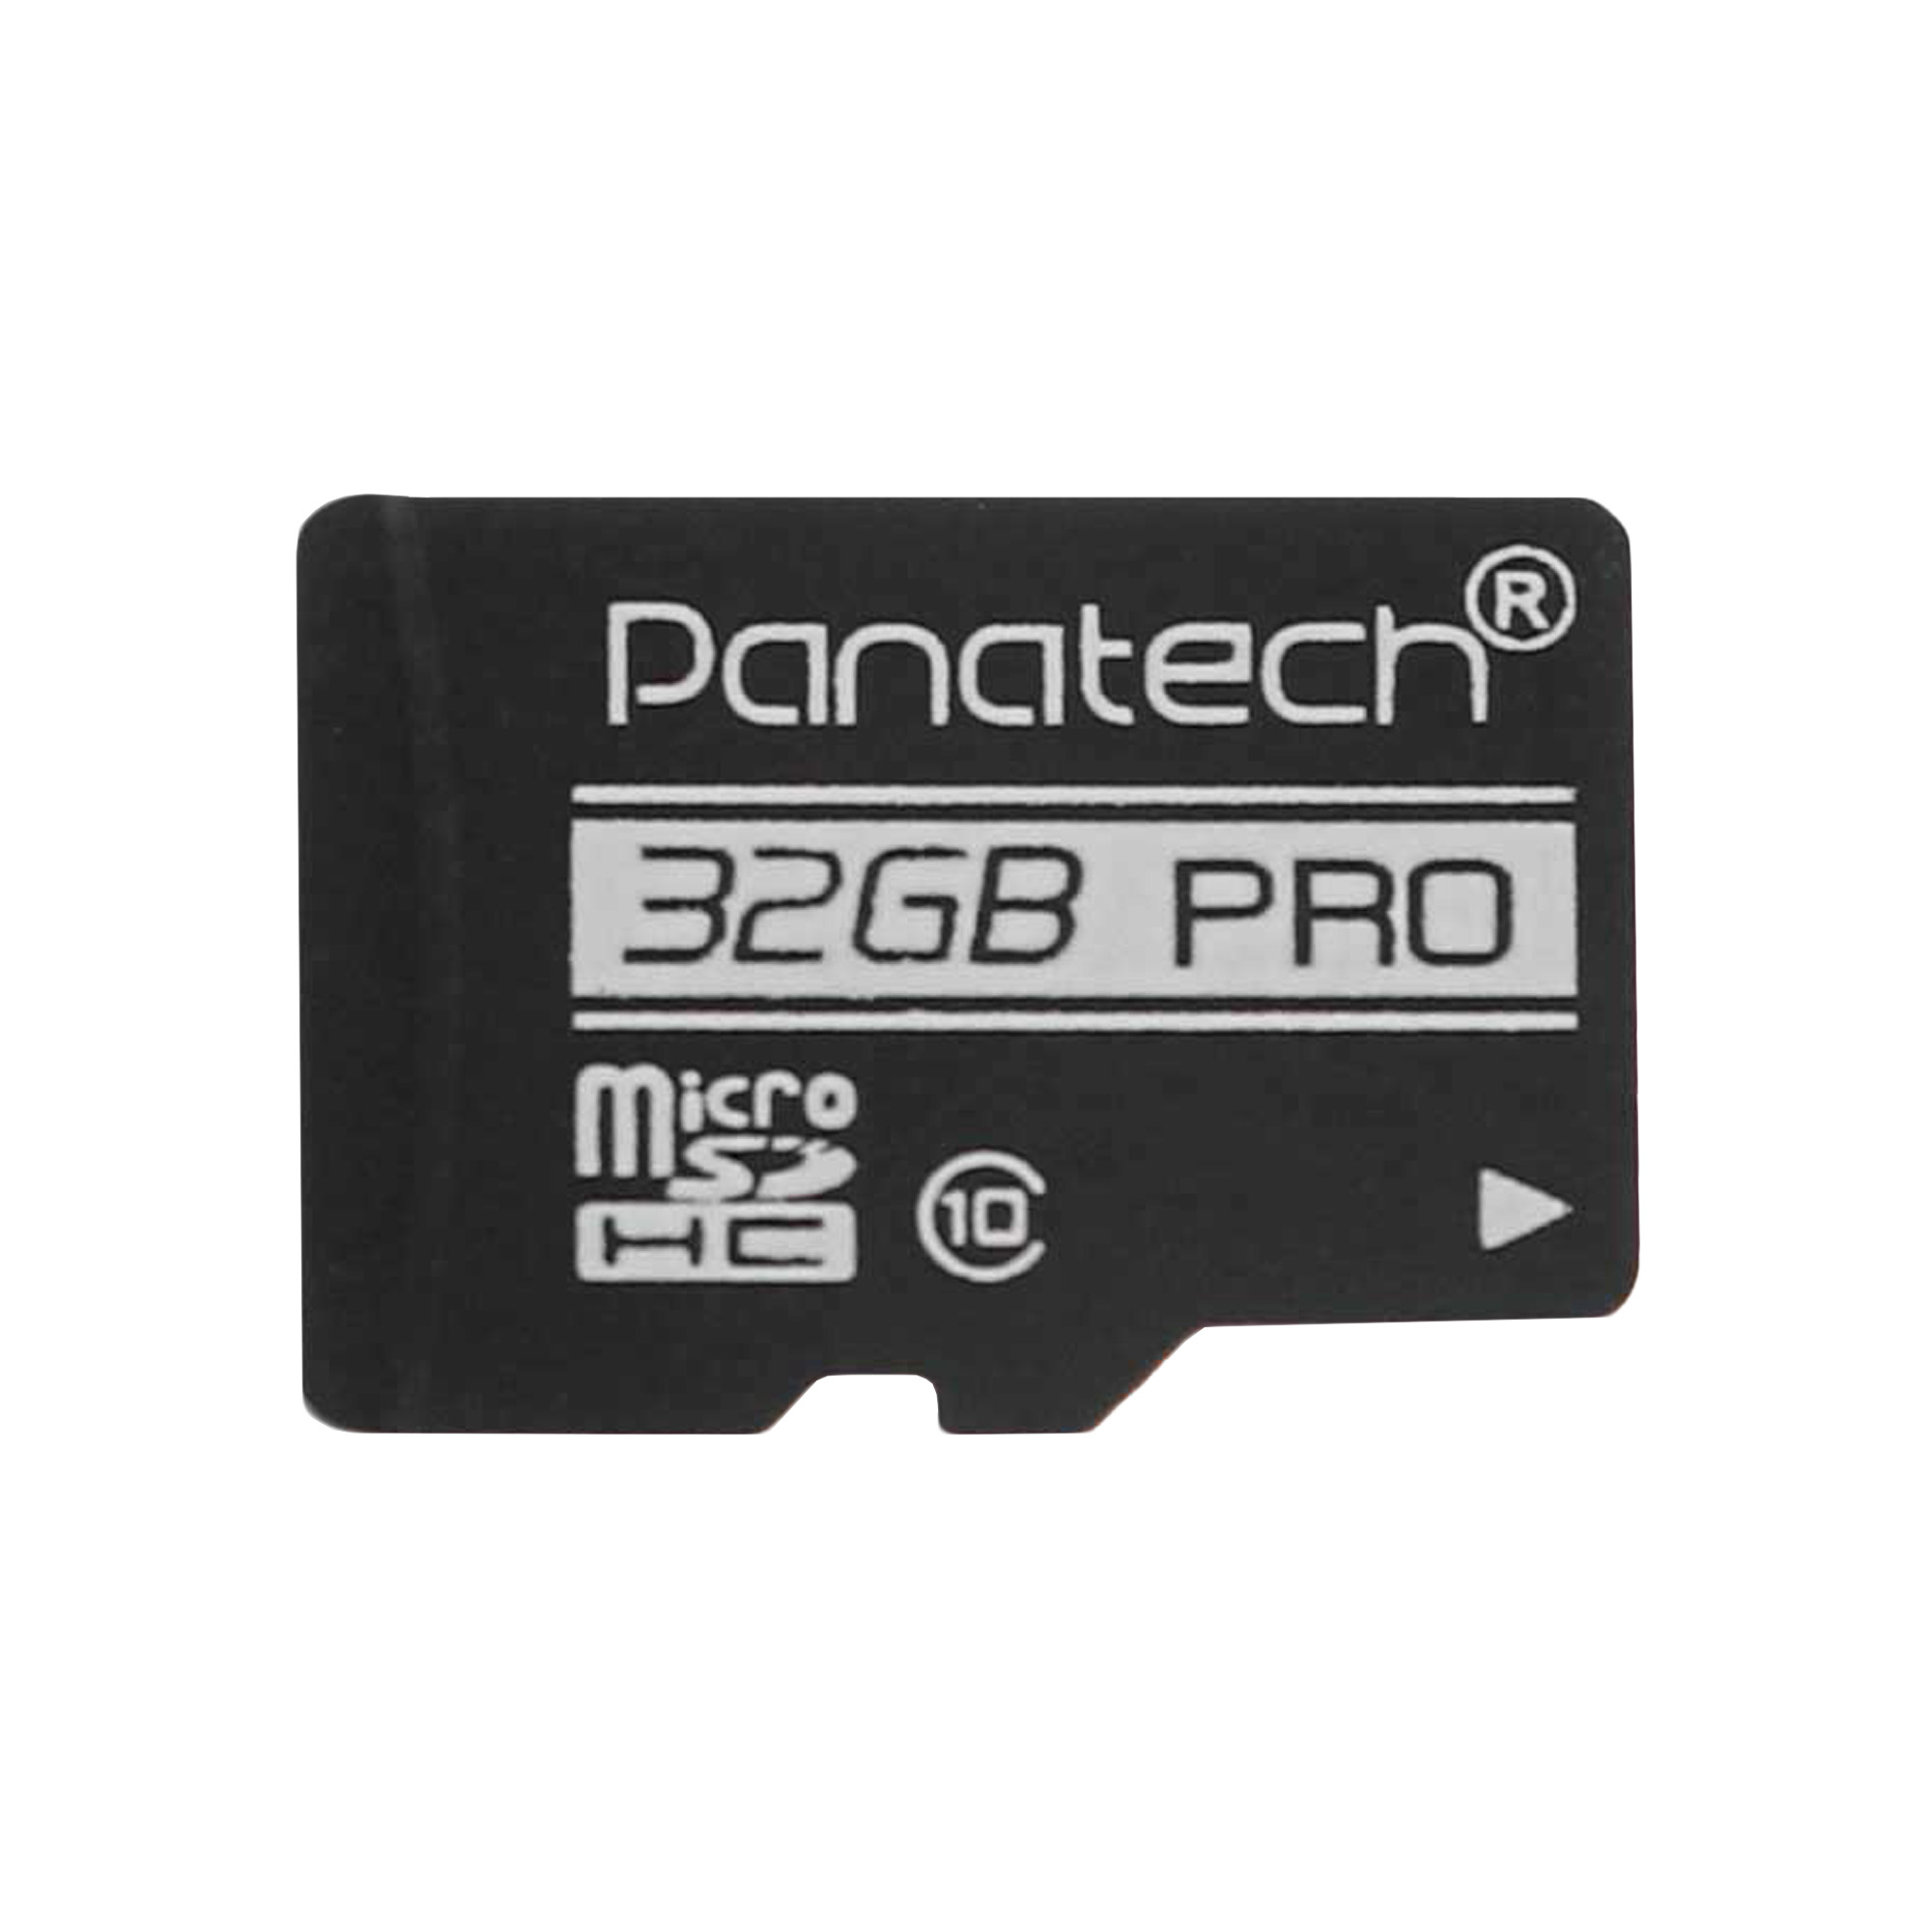 کارت حافظه‌ microSDHC پاناتک مدل bk کلاس 10 استاندارد UHS-I سرعت 30MBps ظرفیت 32 گیگابایت